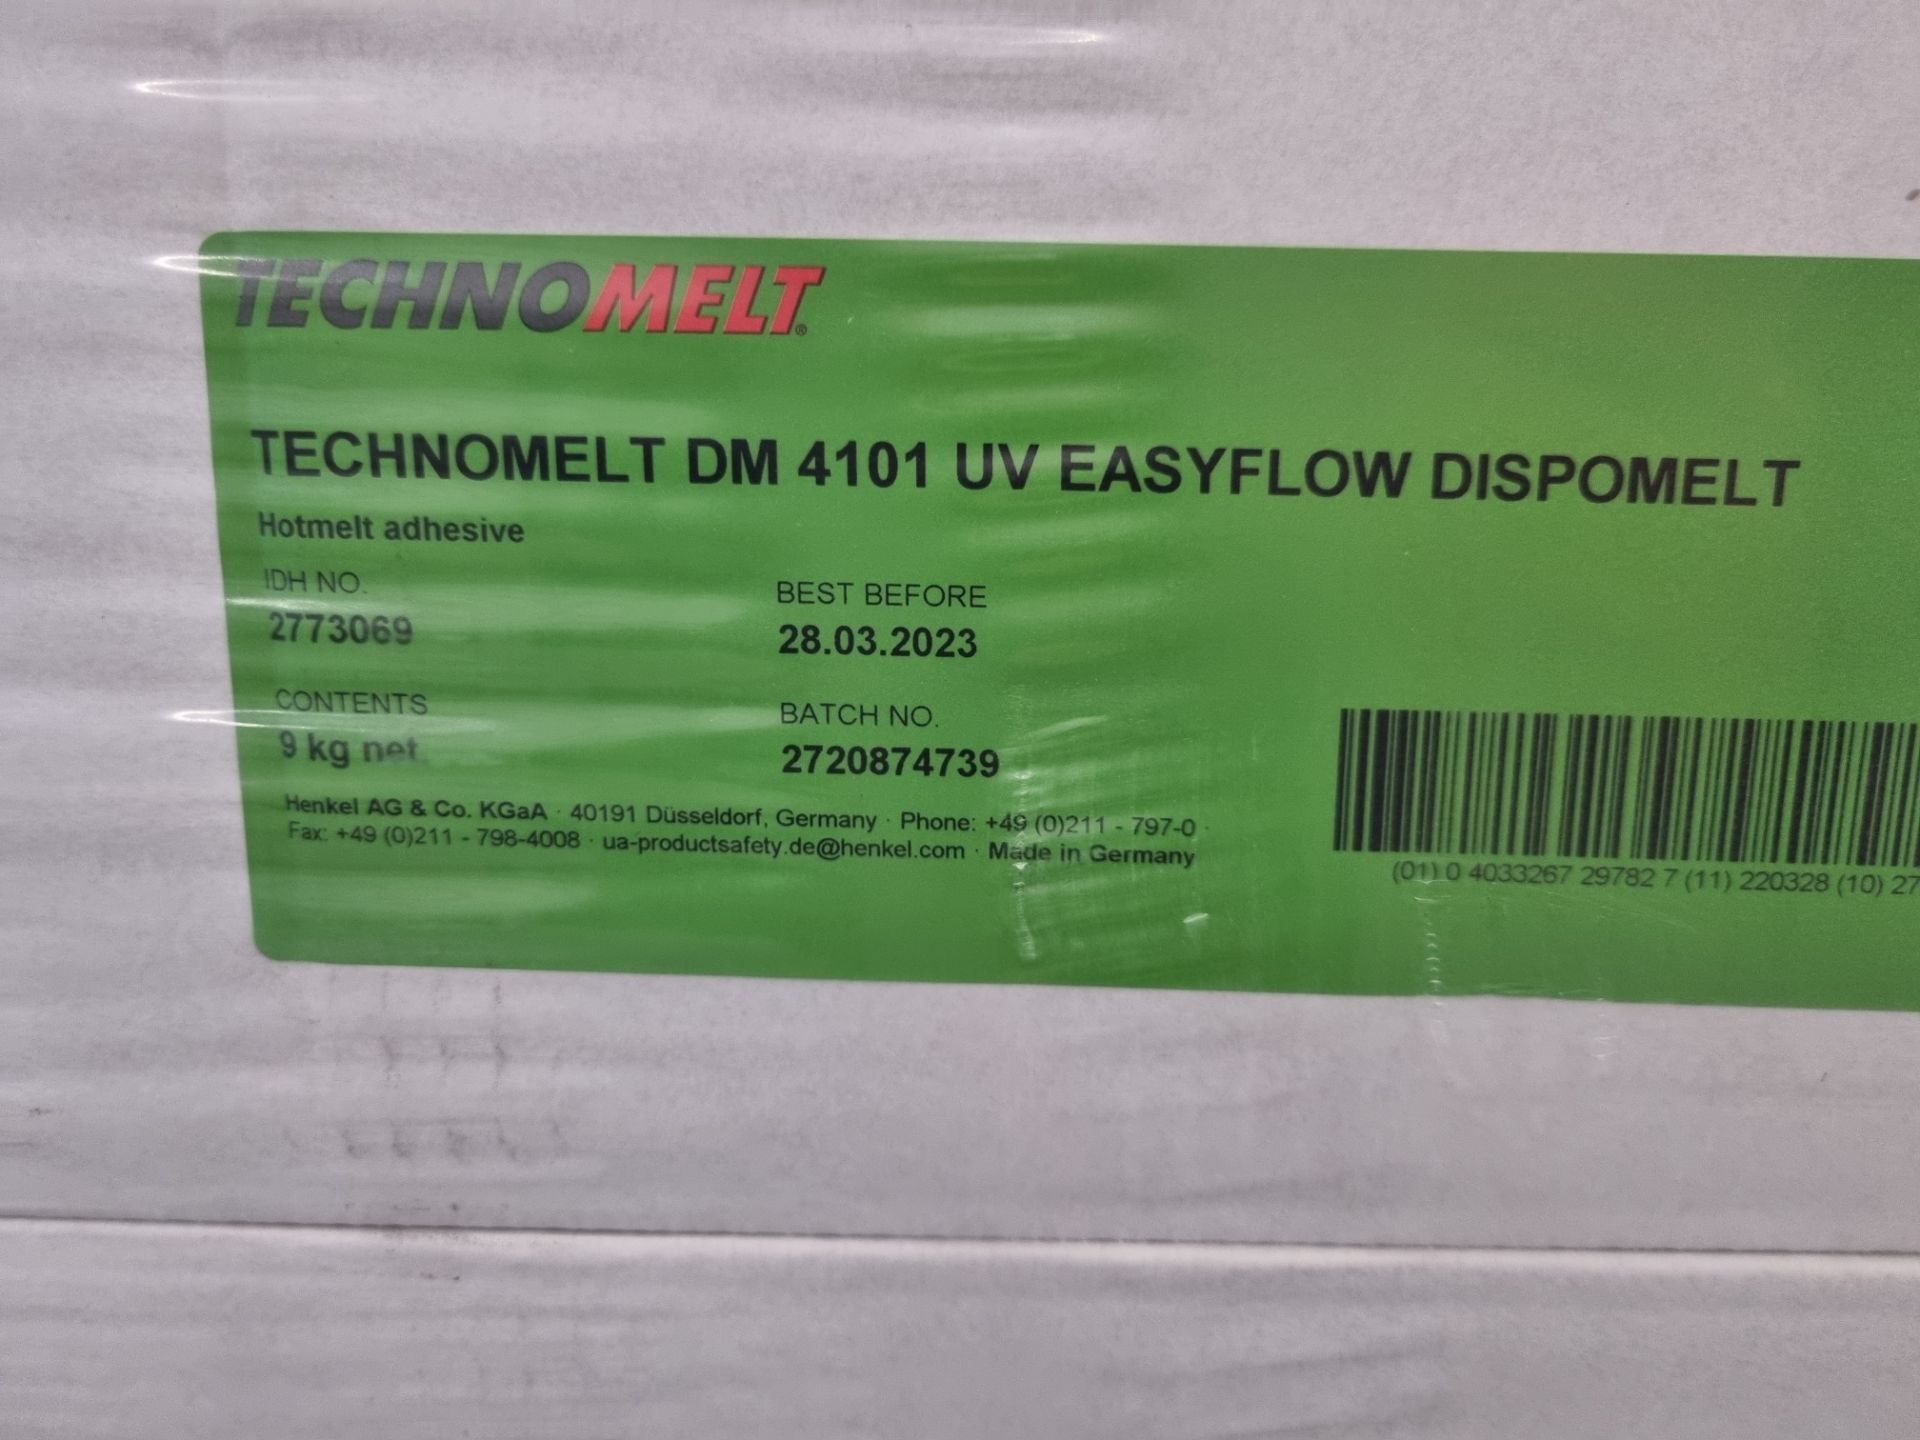 1x pallet of Technomelt DM 4101 UV Easyflow Dispomelt - Image 2 of 2